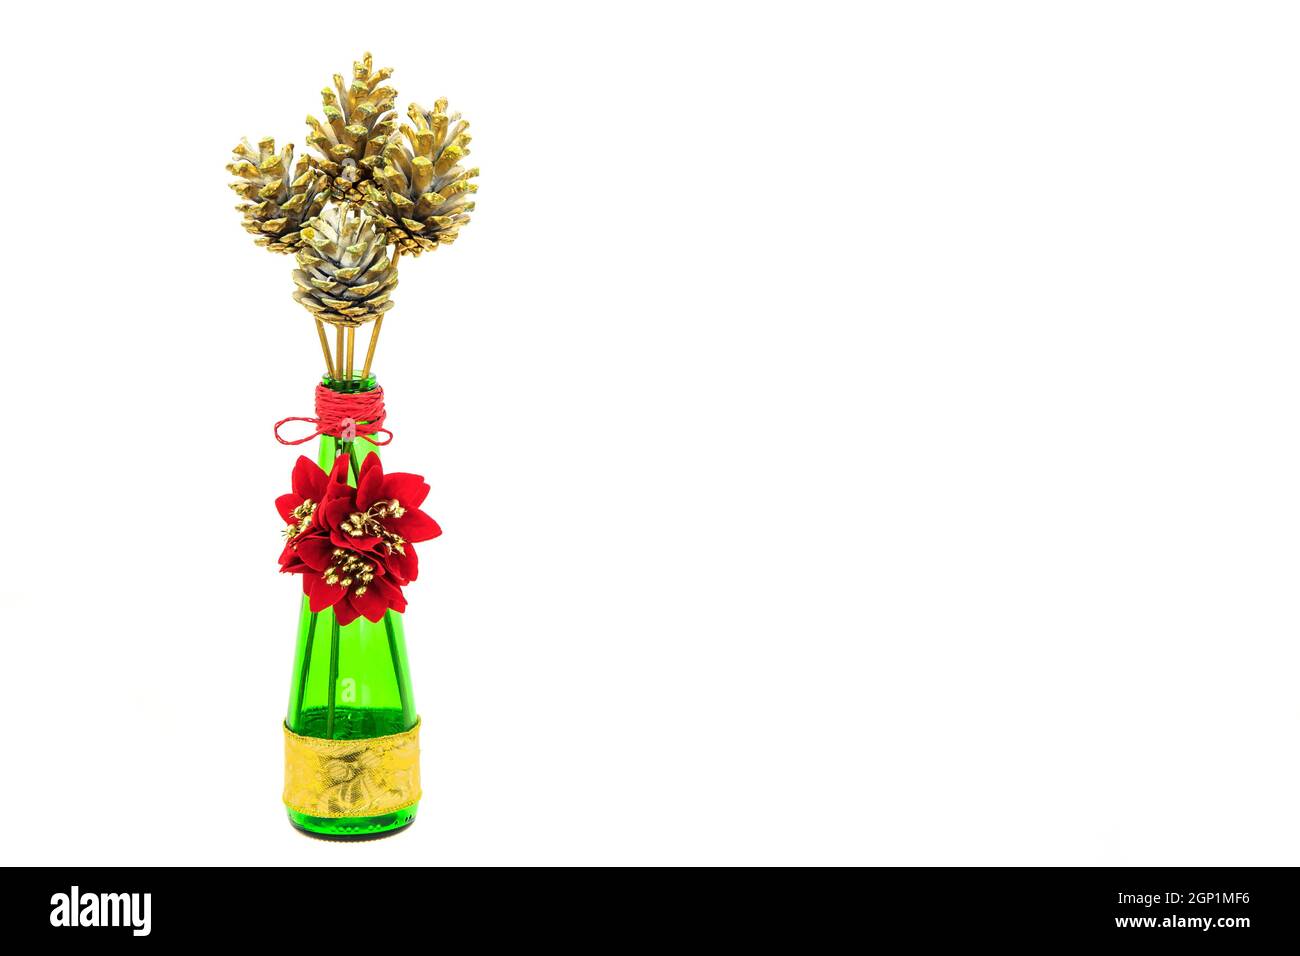 Goldbemalte Tannenzapfen und Poinsettienblüten in einer grünen Flasche isoliert auf Weiß Stockfoto